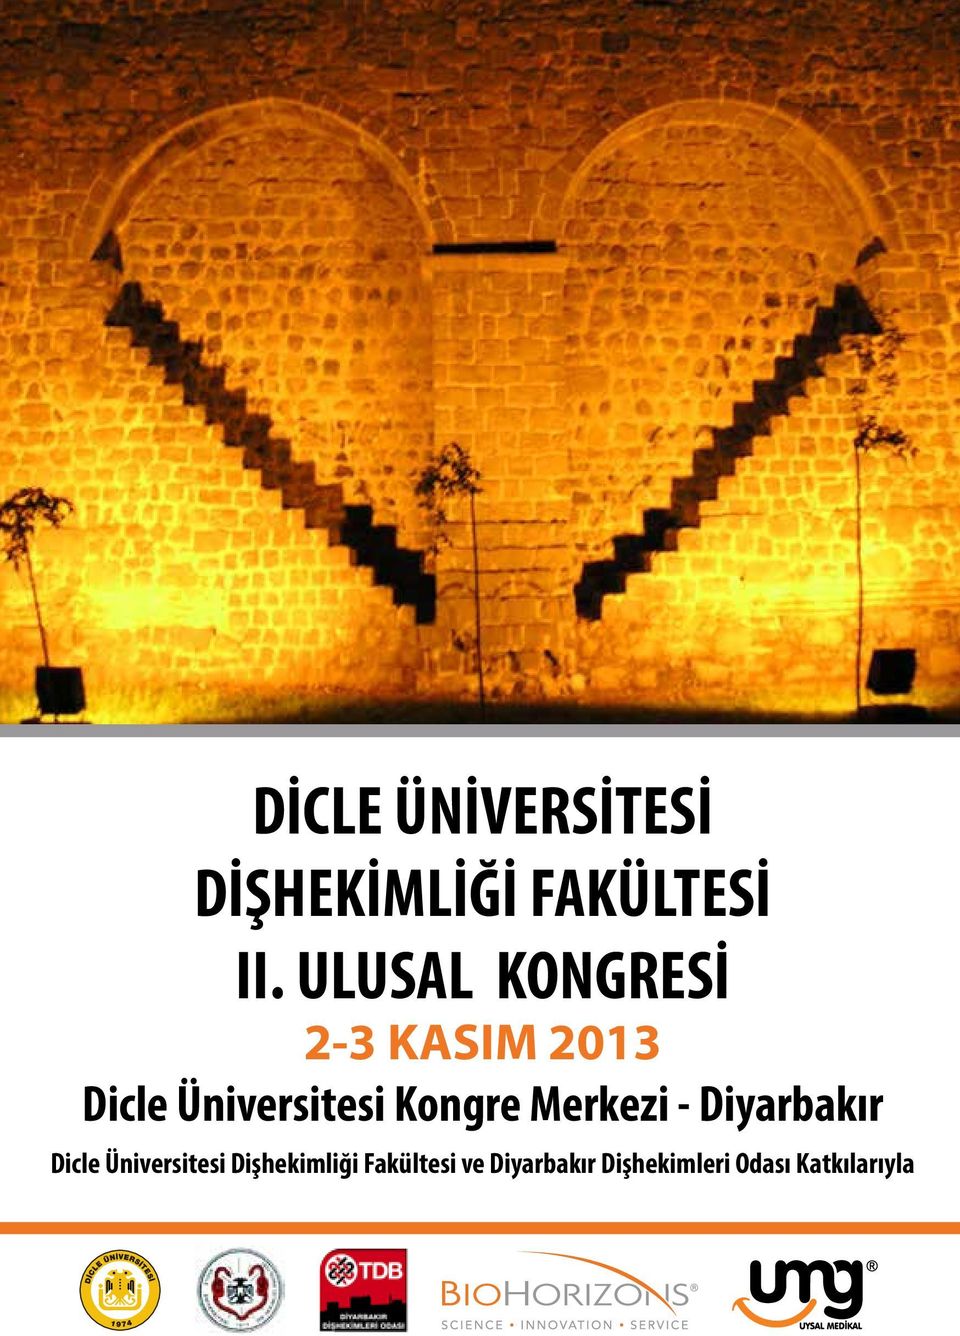 Kongre Merkezi - Diyarbakır Dicle Üniversitesi